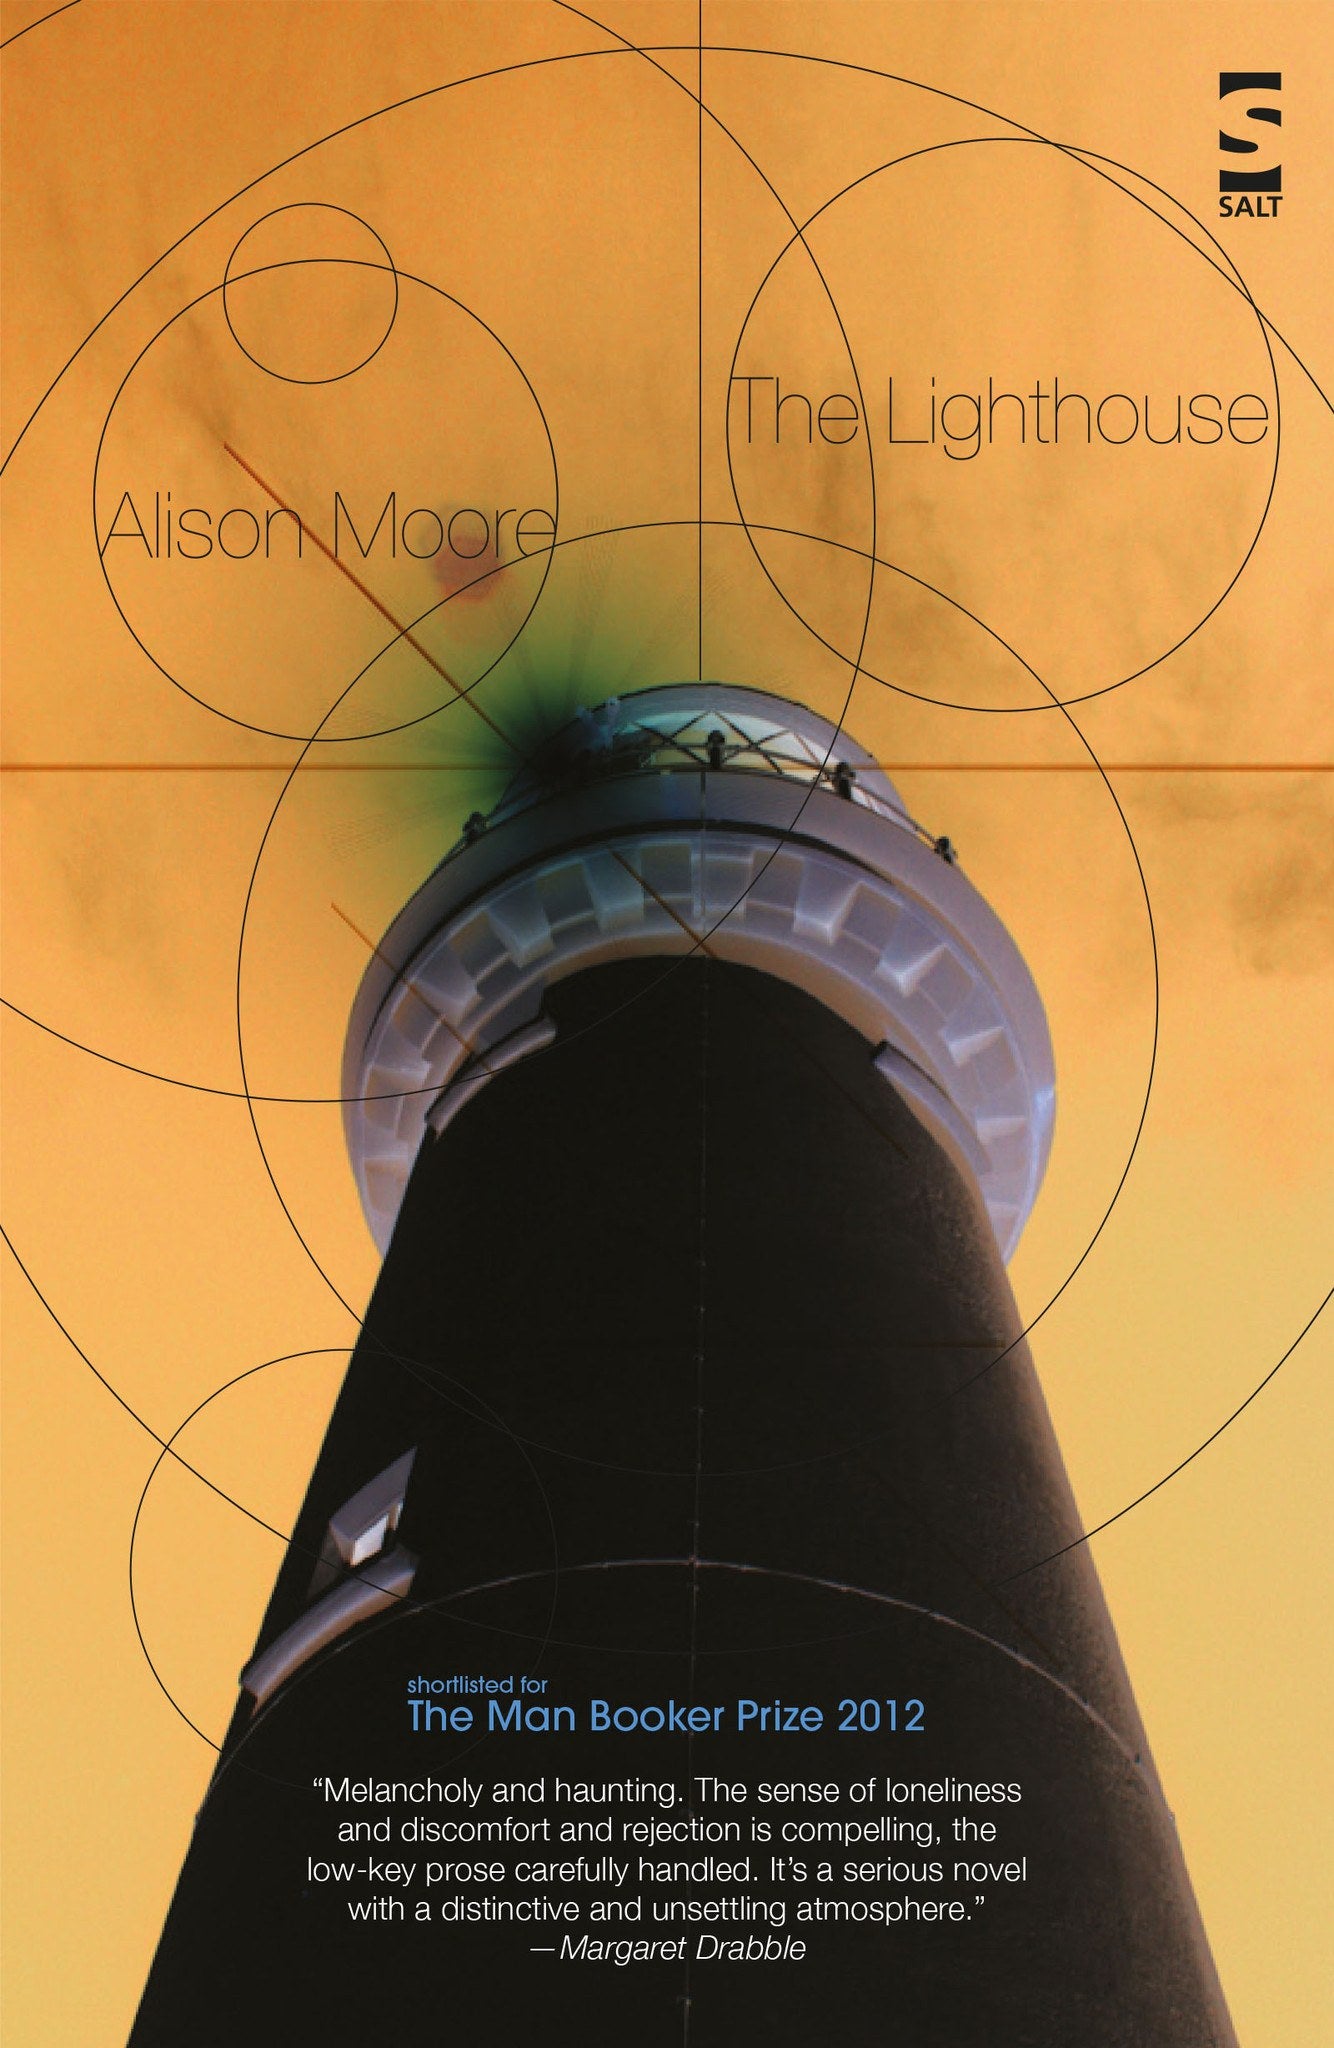 The Lighthouse - Salt